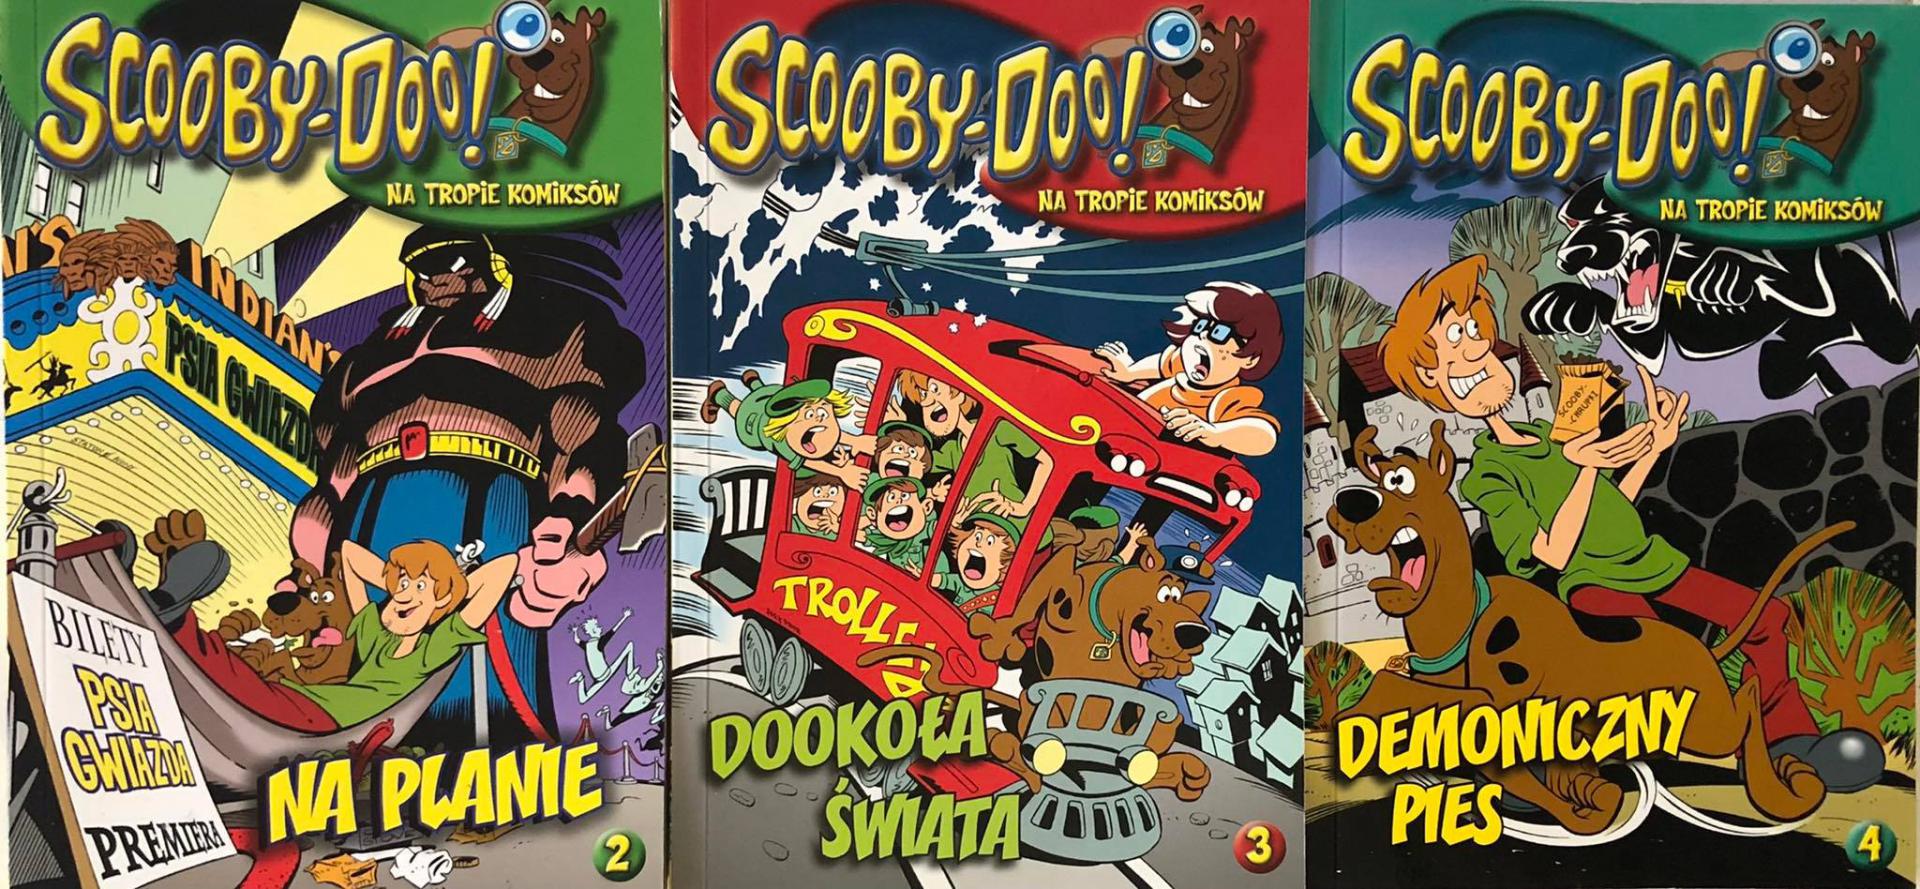 Scooby-Doo! Na tropie komiksów